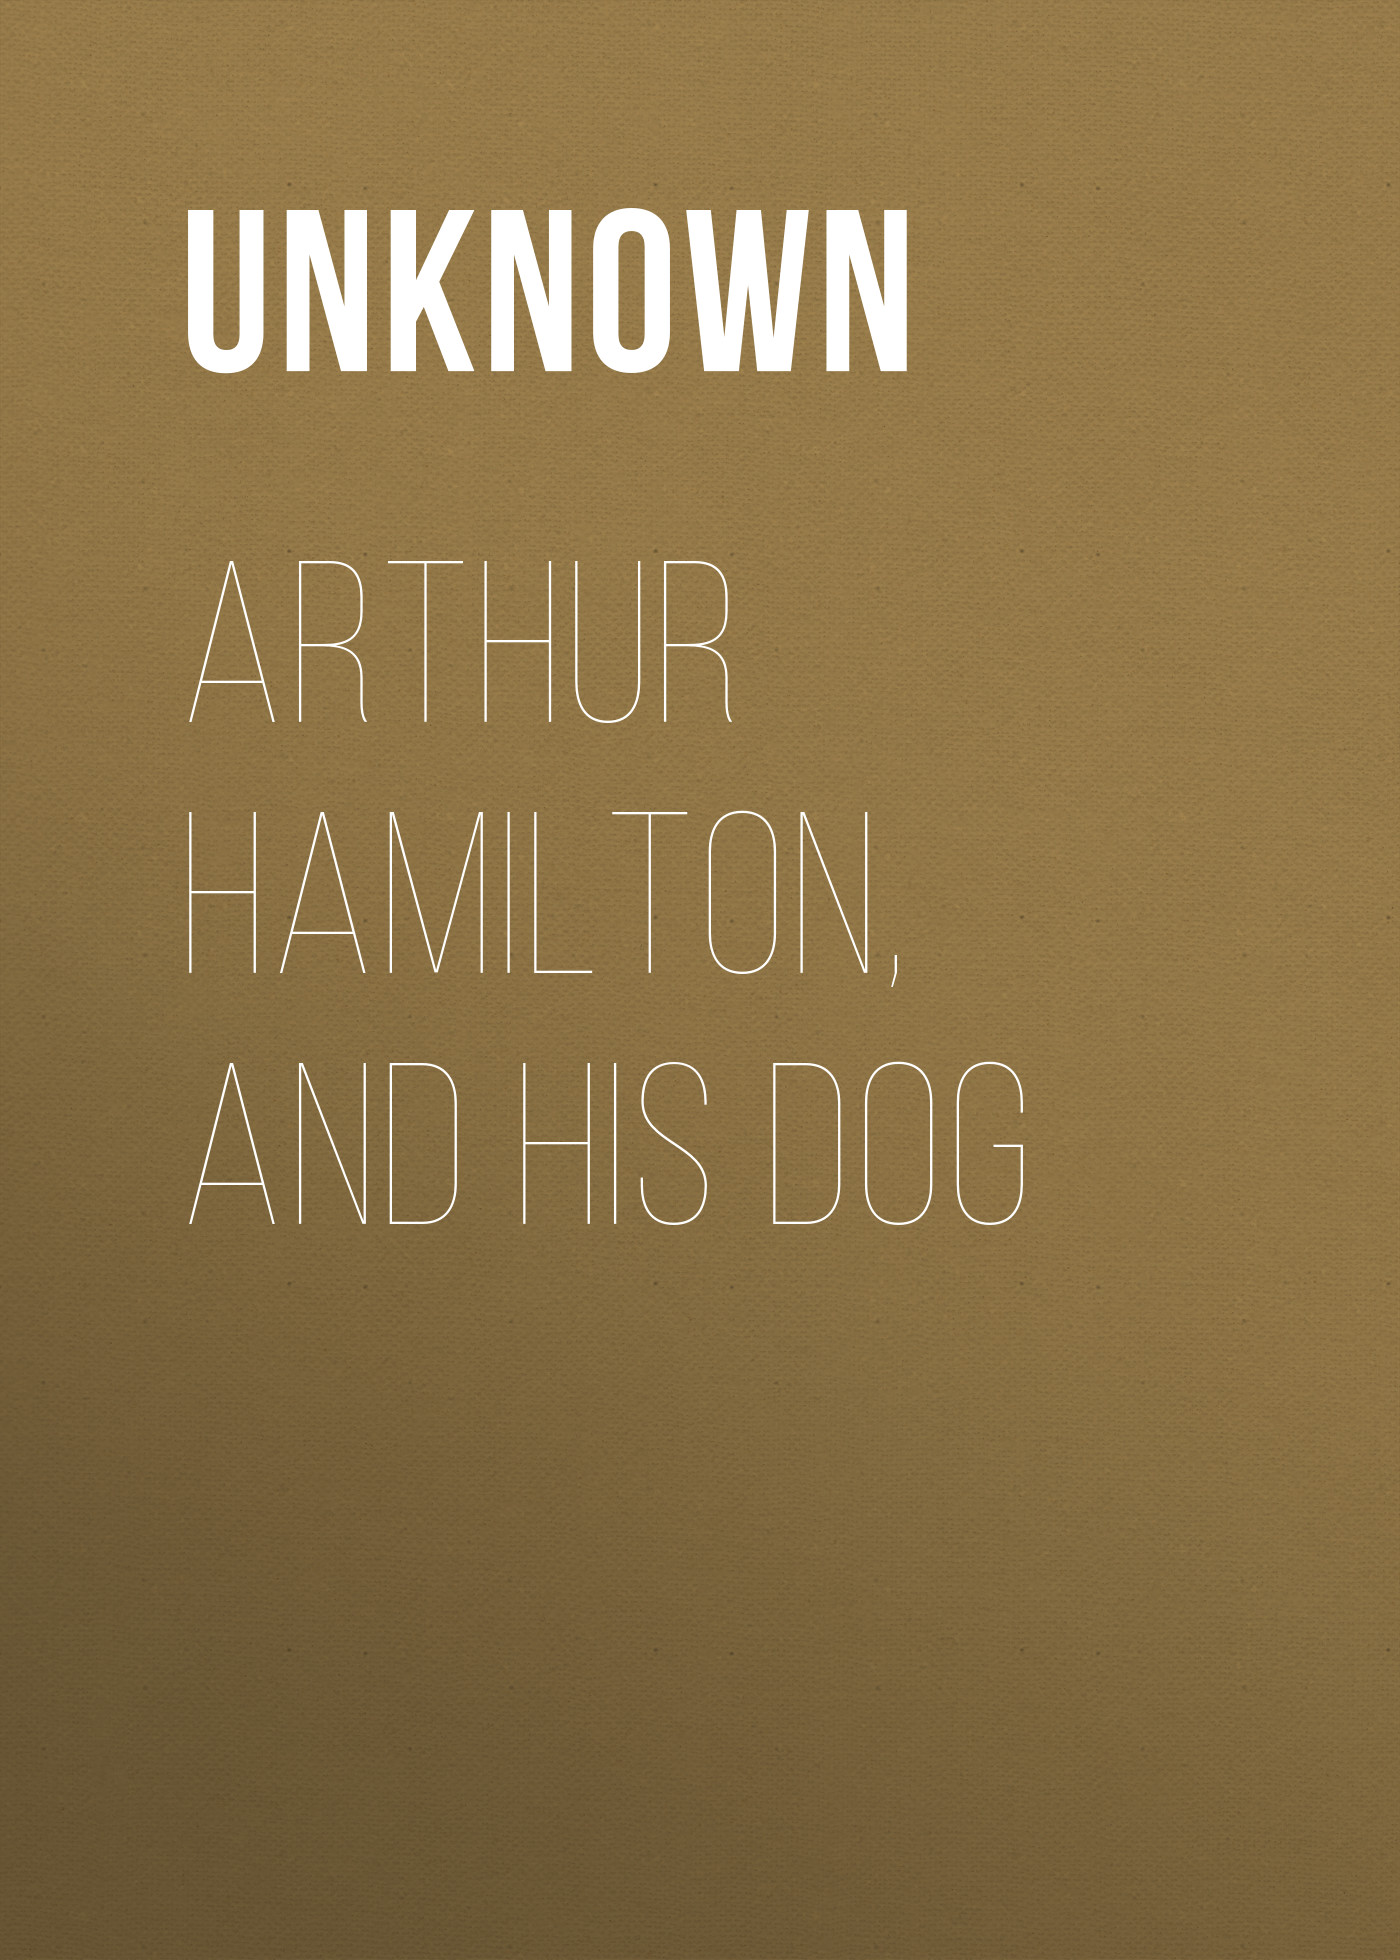 Книга Arthur Hamilton, and His Dog из серии , созданная Unknown Unknown, может относится к жанру Зарубежные детские книги, Зарубежная старинная литература, Зарубежная классика. Стоимость электронной книги Arthur Hamilton, and His Dog с идентификатором 35495719 составляет 0 руб.